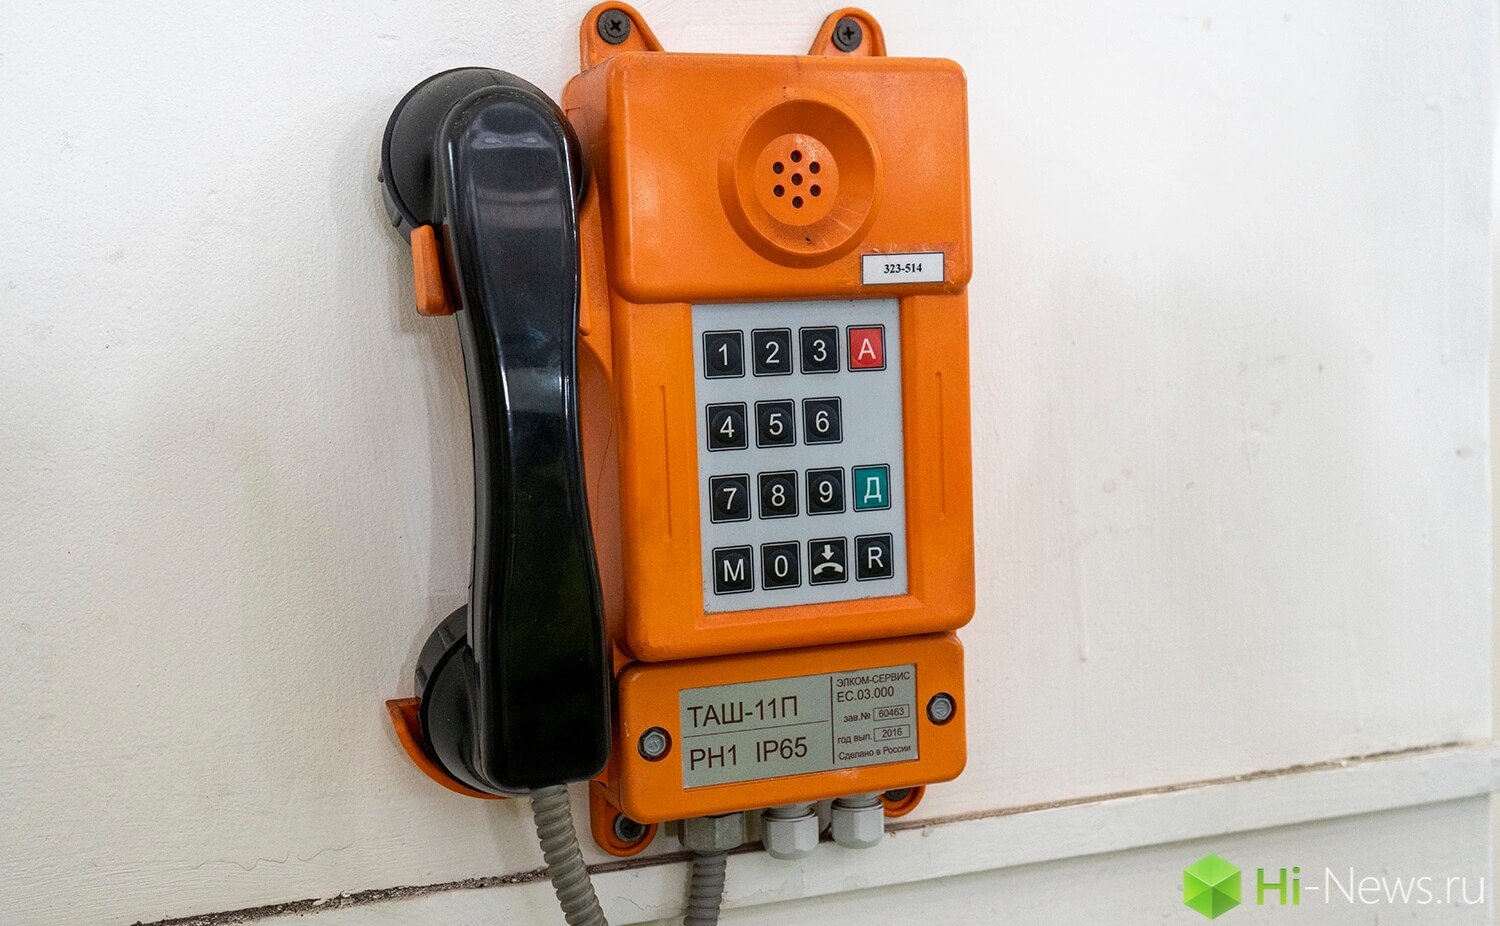 Как выглядит Братская ГЭС. Телефон для связи. Фото.